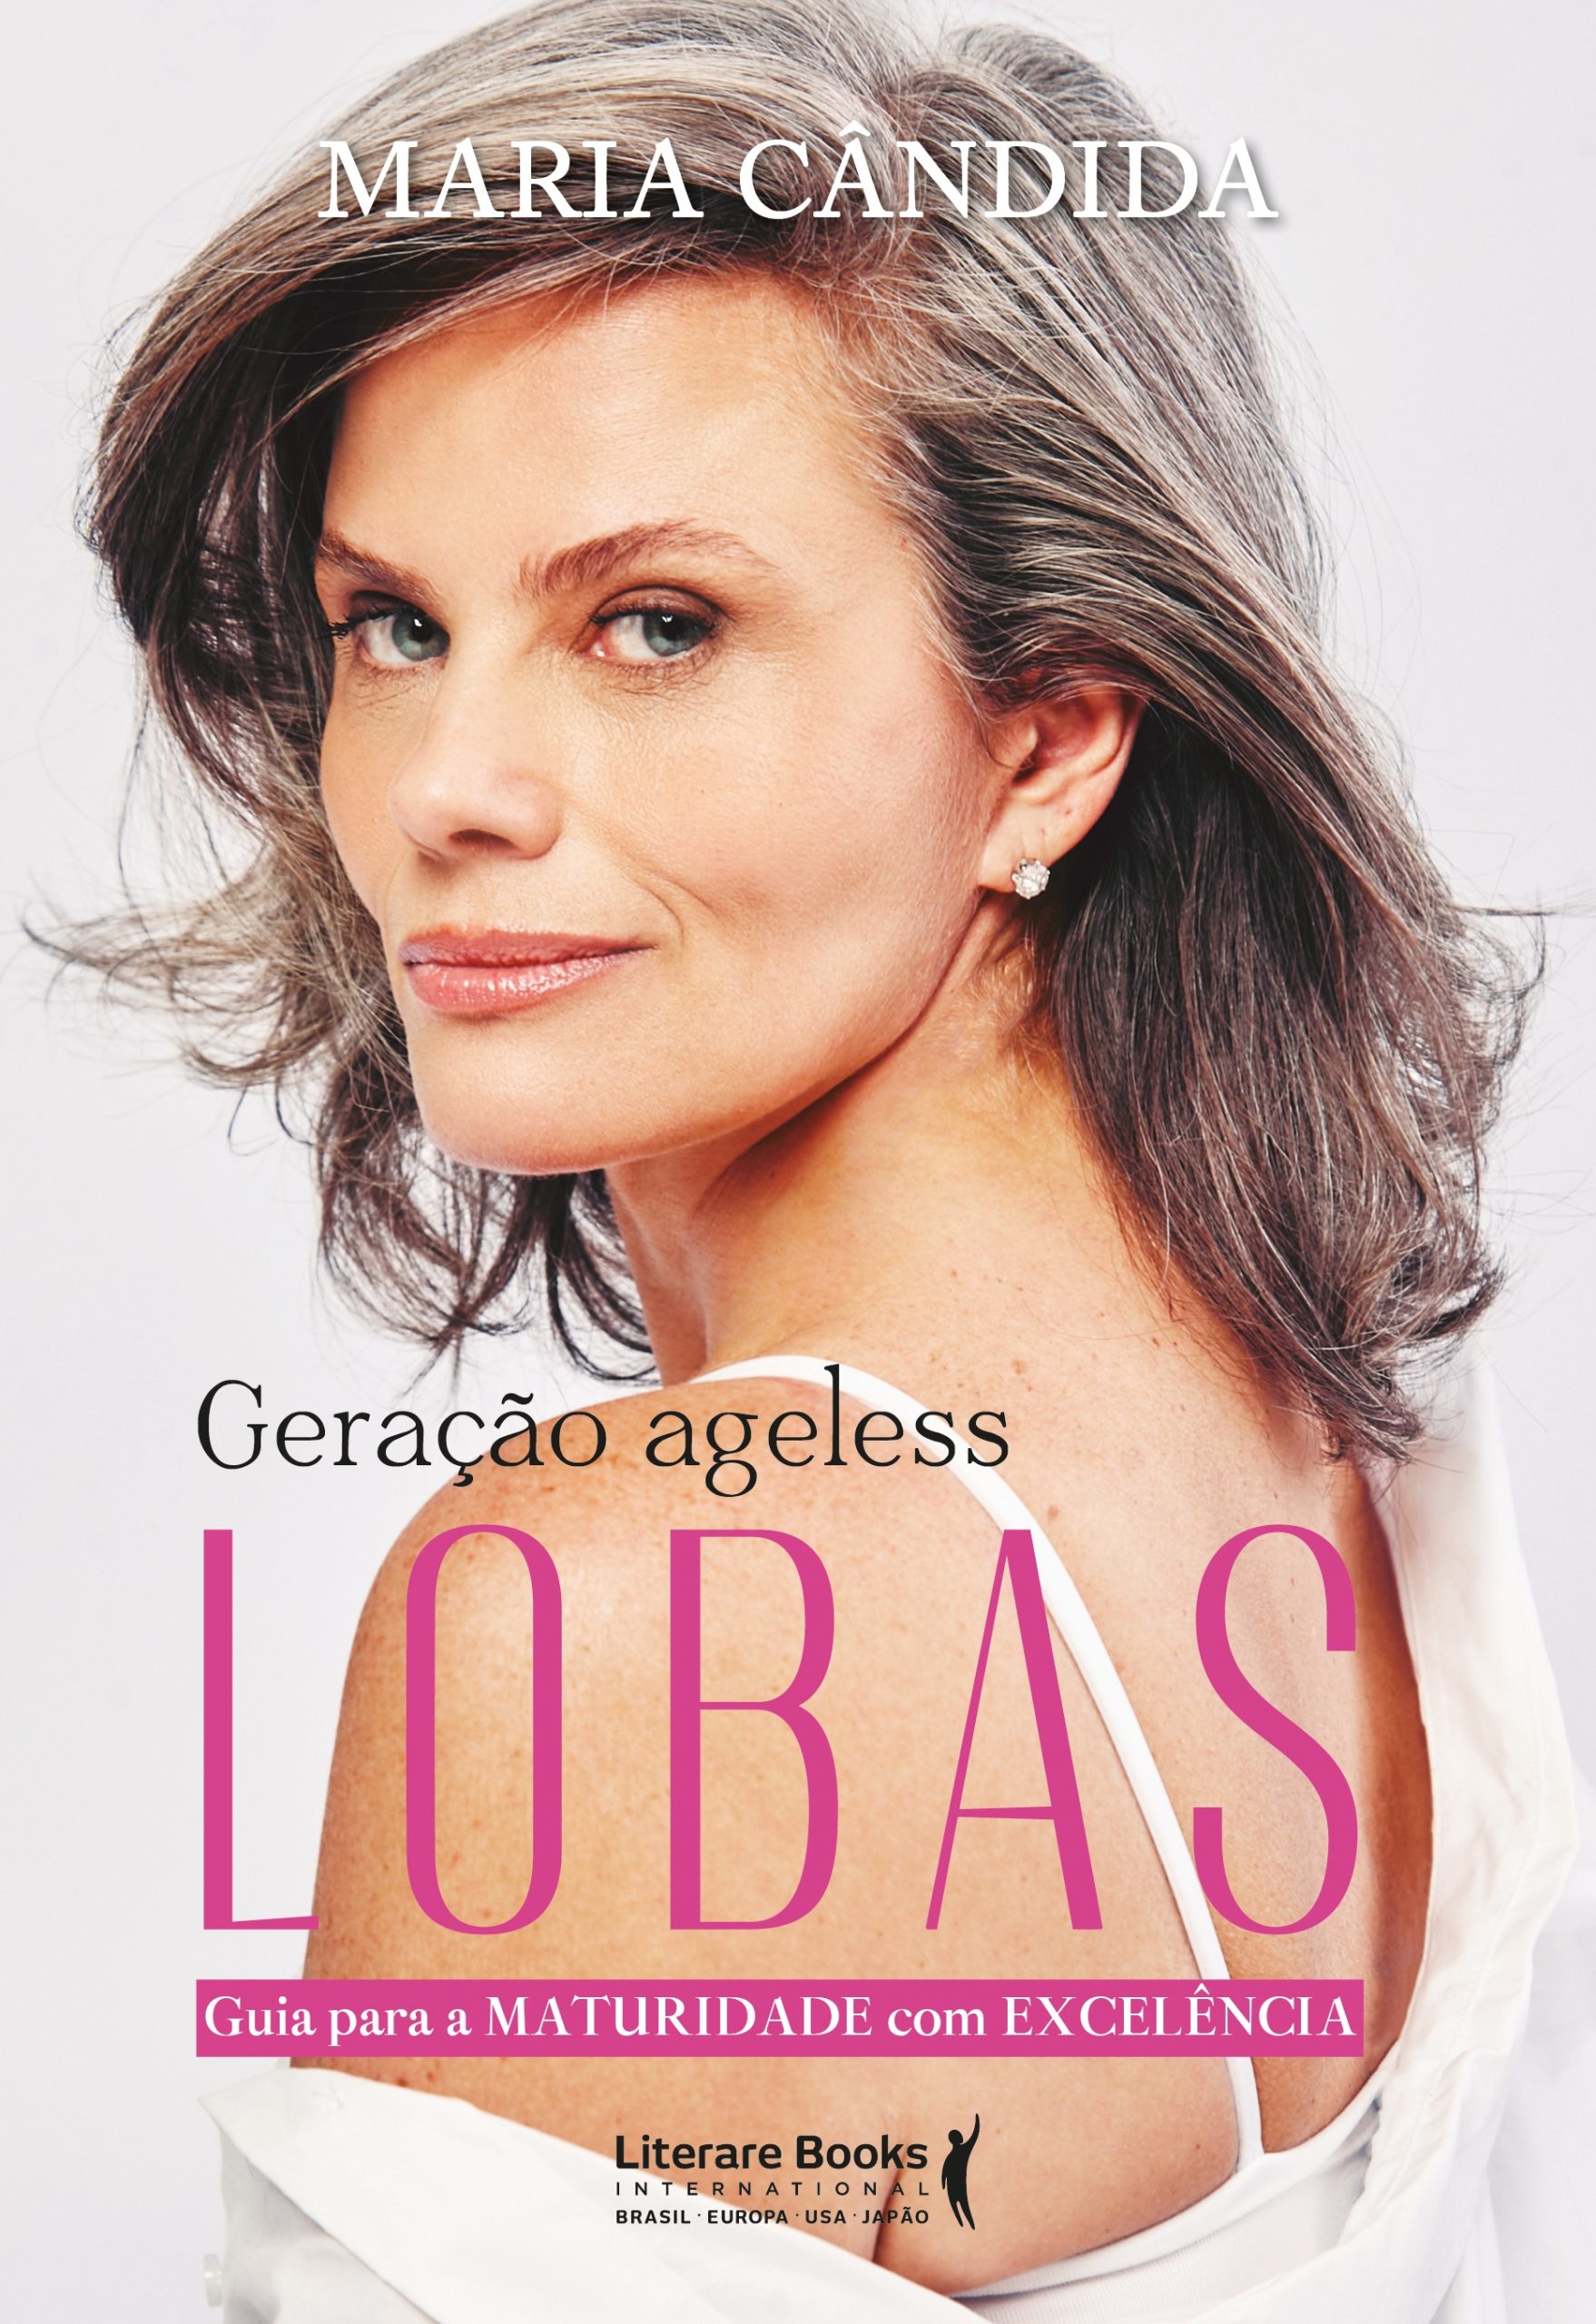 Maria Cândida lança em Londrina livro para mulheres maduras